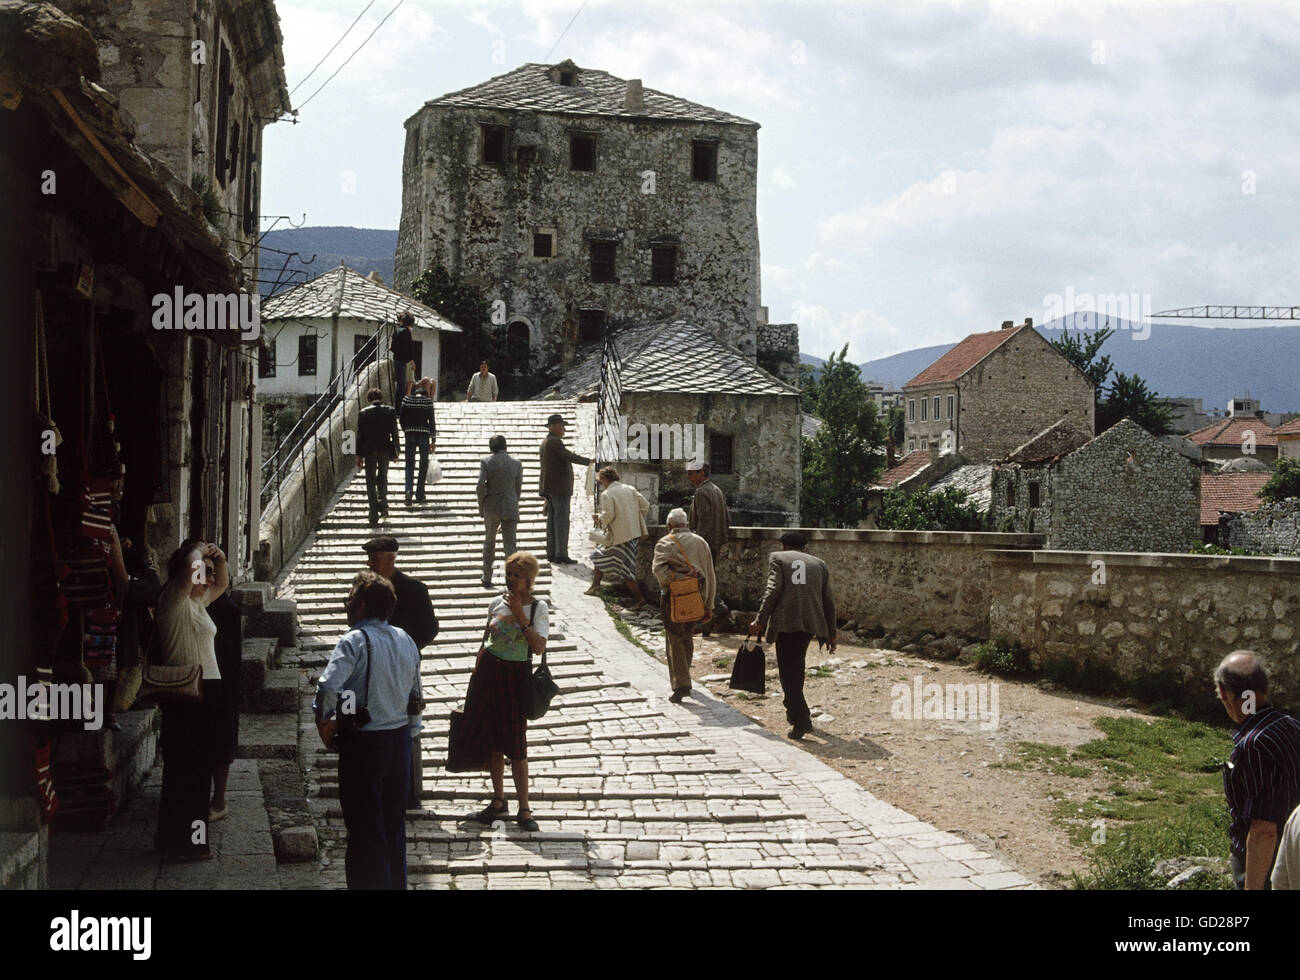 Géographie / Voyage, Bosnie-Herzégovine, Mostar, pont, 1978, droits-supplémentaires-Clearences-non disponible Banque D'Images